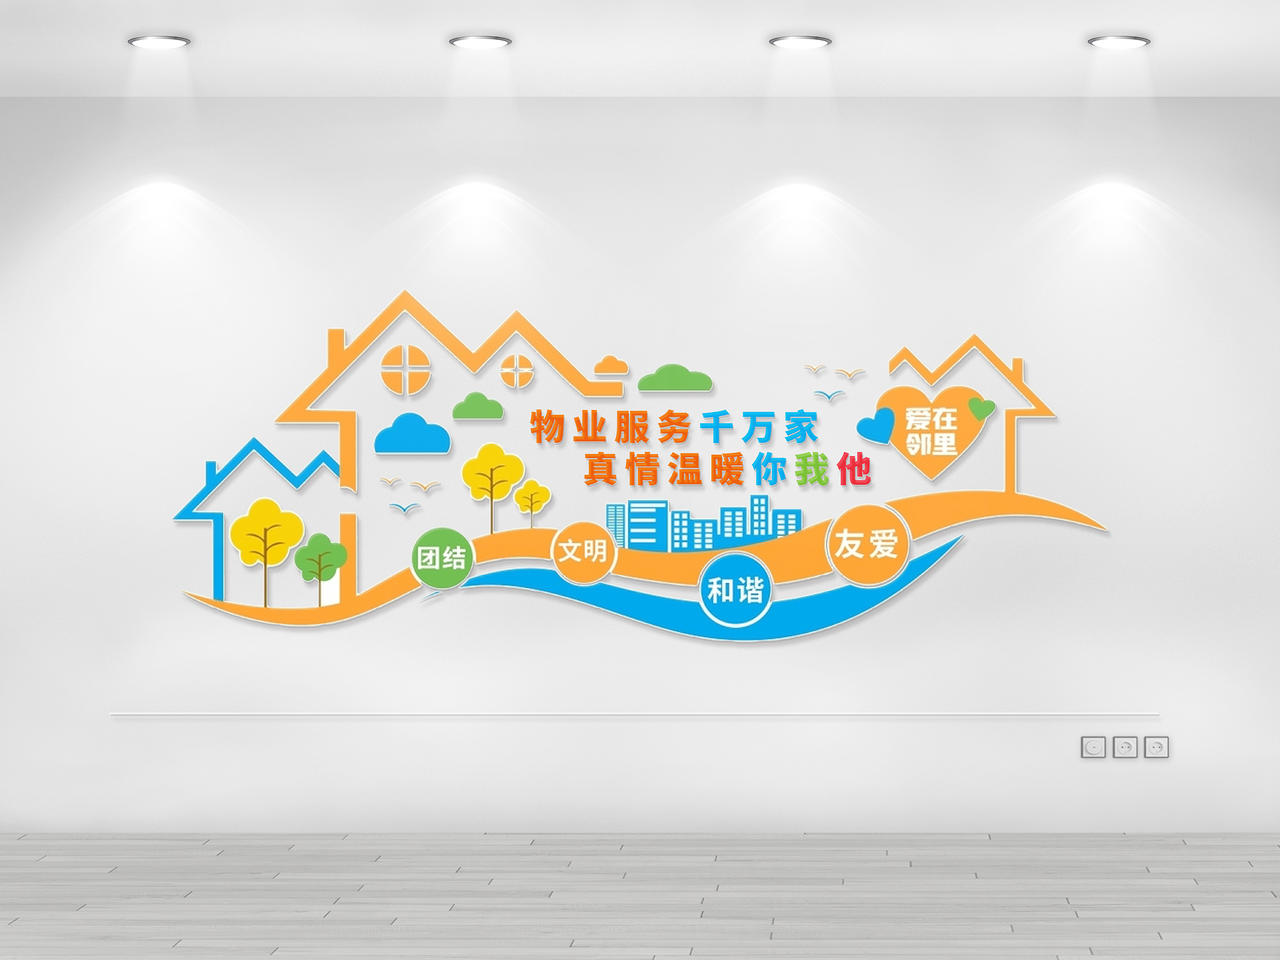 蓝橙简约时尚大气社区服务物业文化墙物业服务社区小区环保绿色文化墙展板